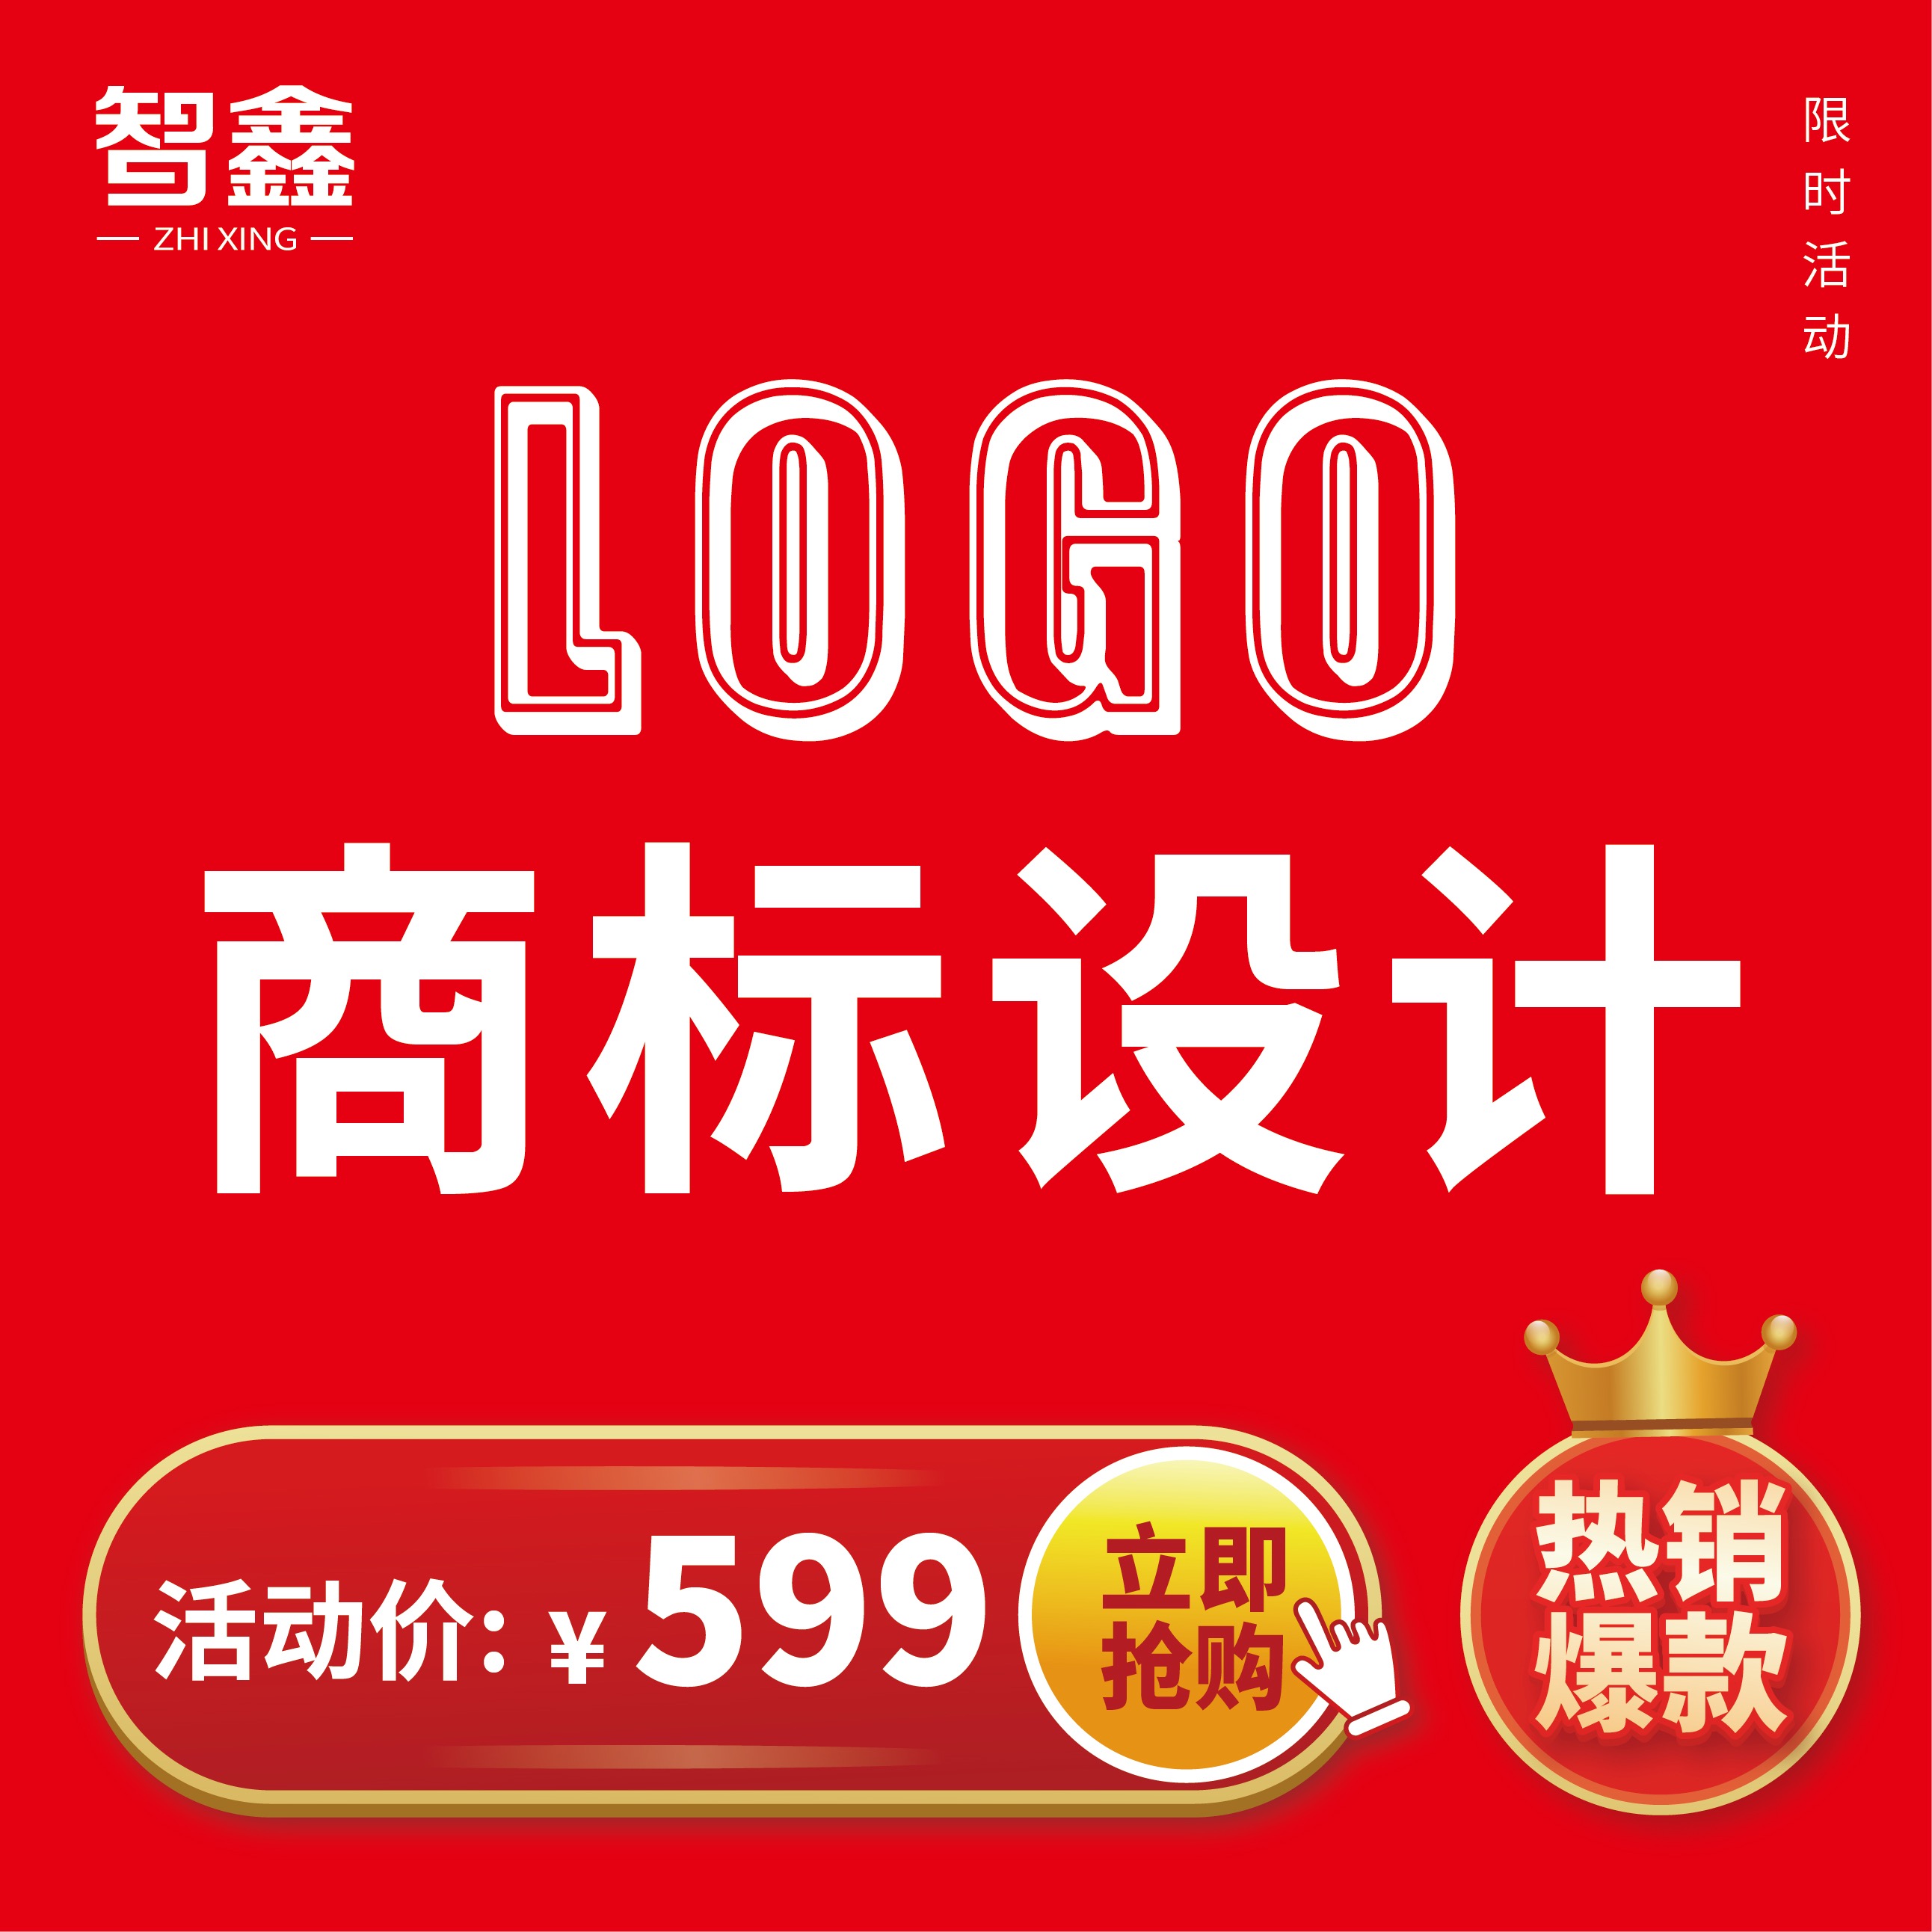 品牌logo设计 资深设计师版LOGO 3套方案 活动特价